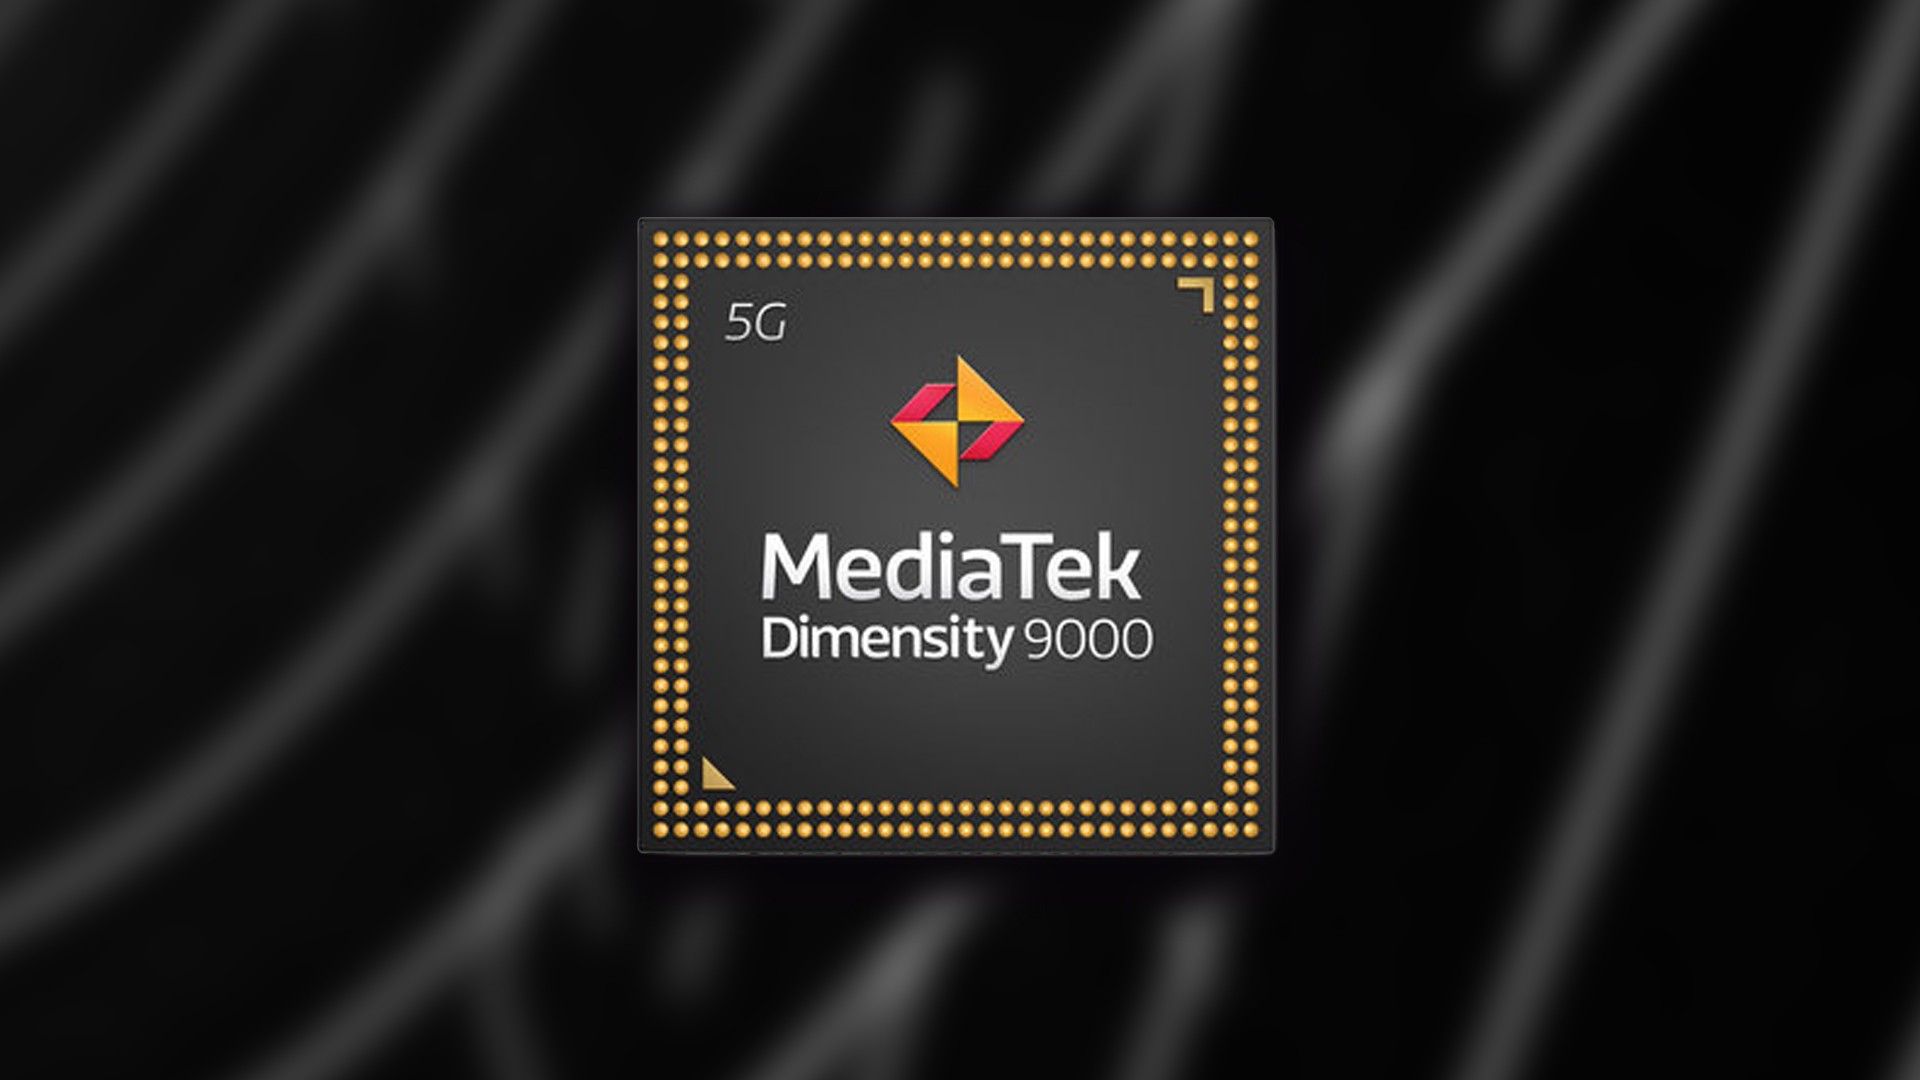 Realme utilizar o Dimensity 9000 da MediaTek